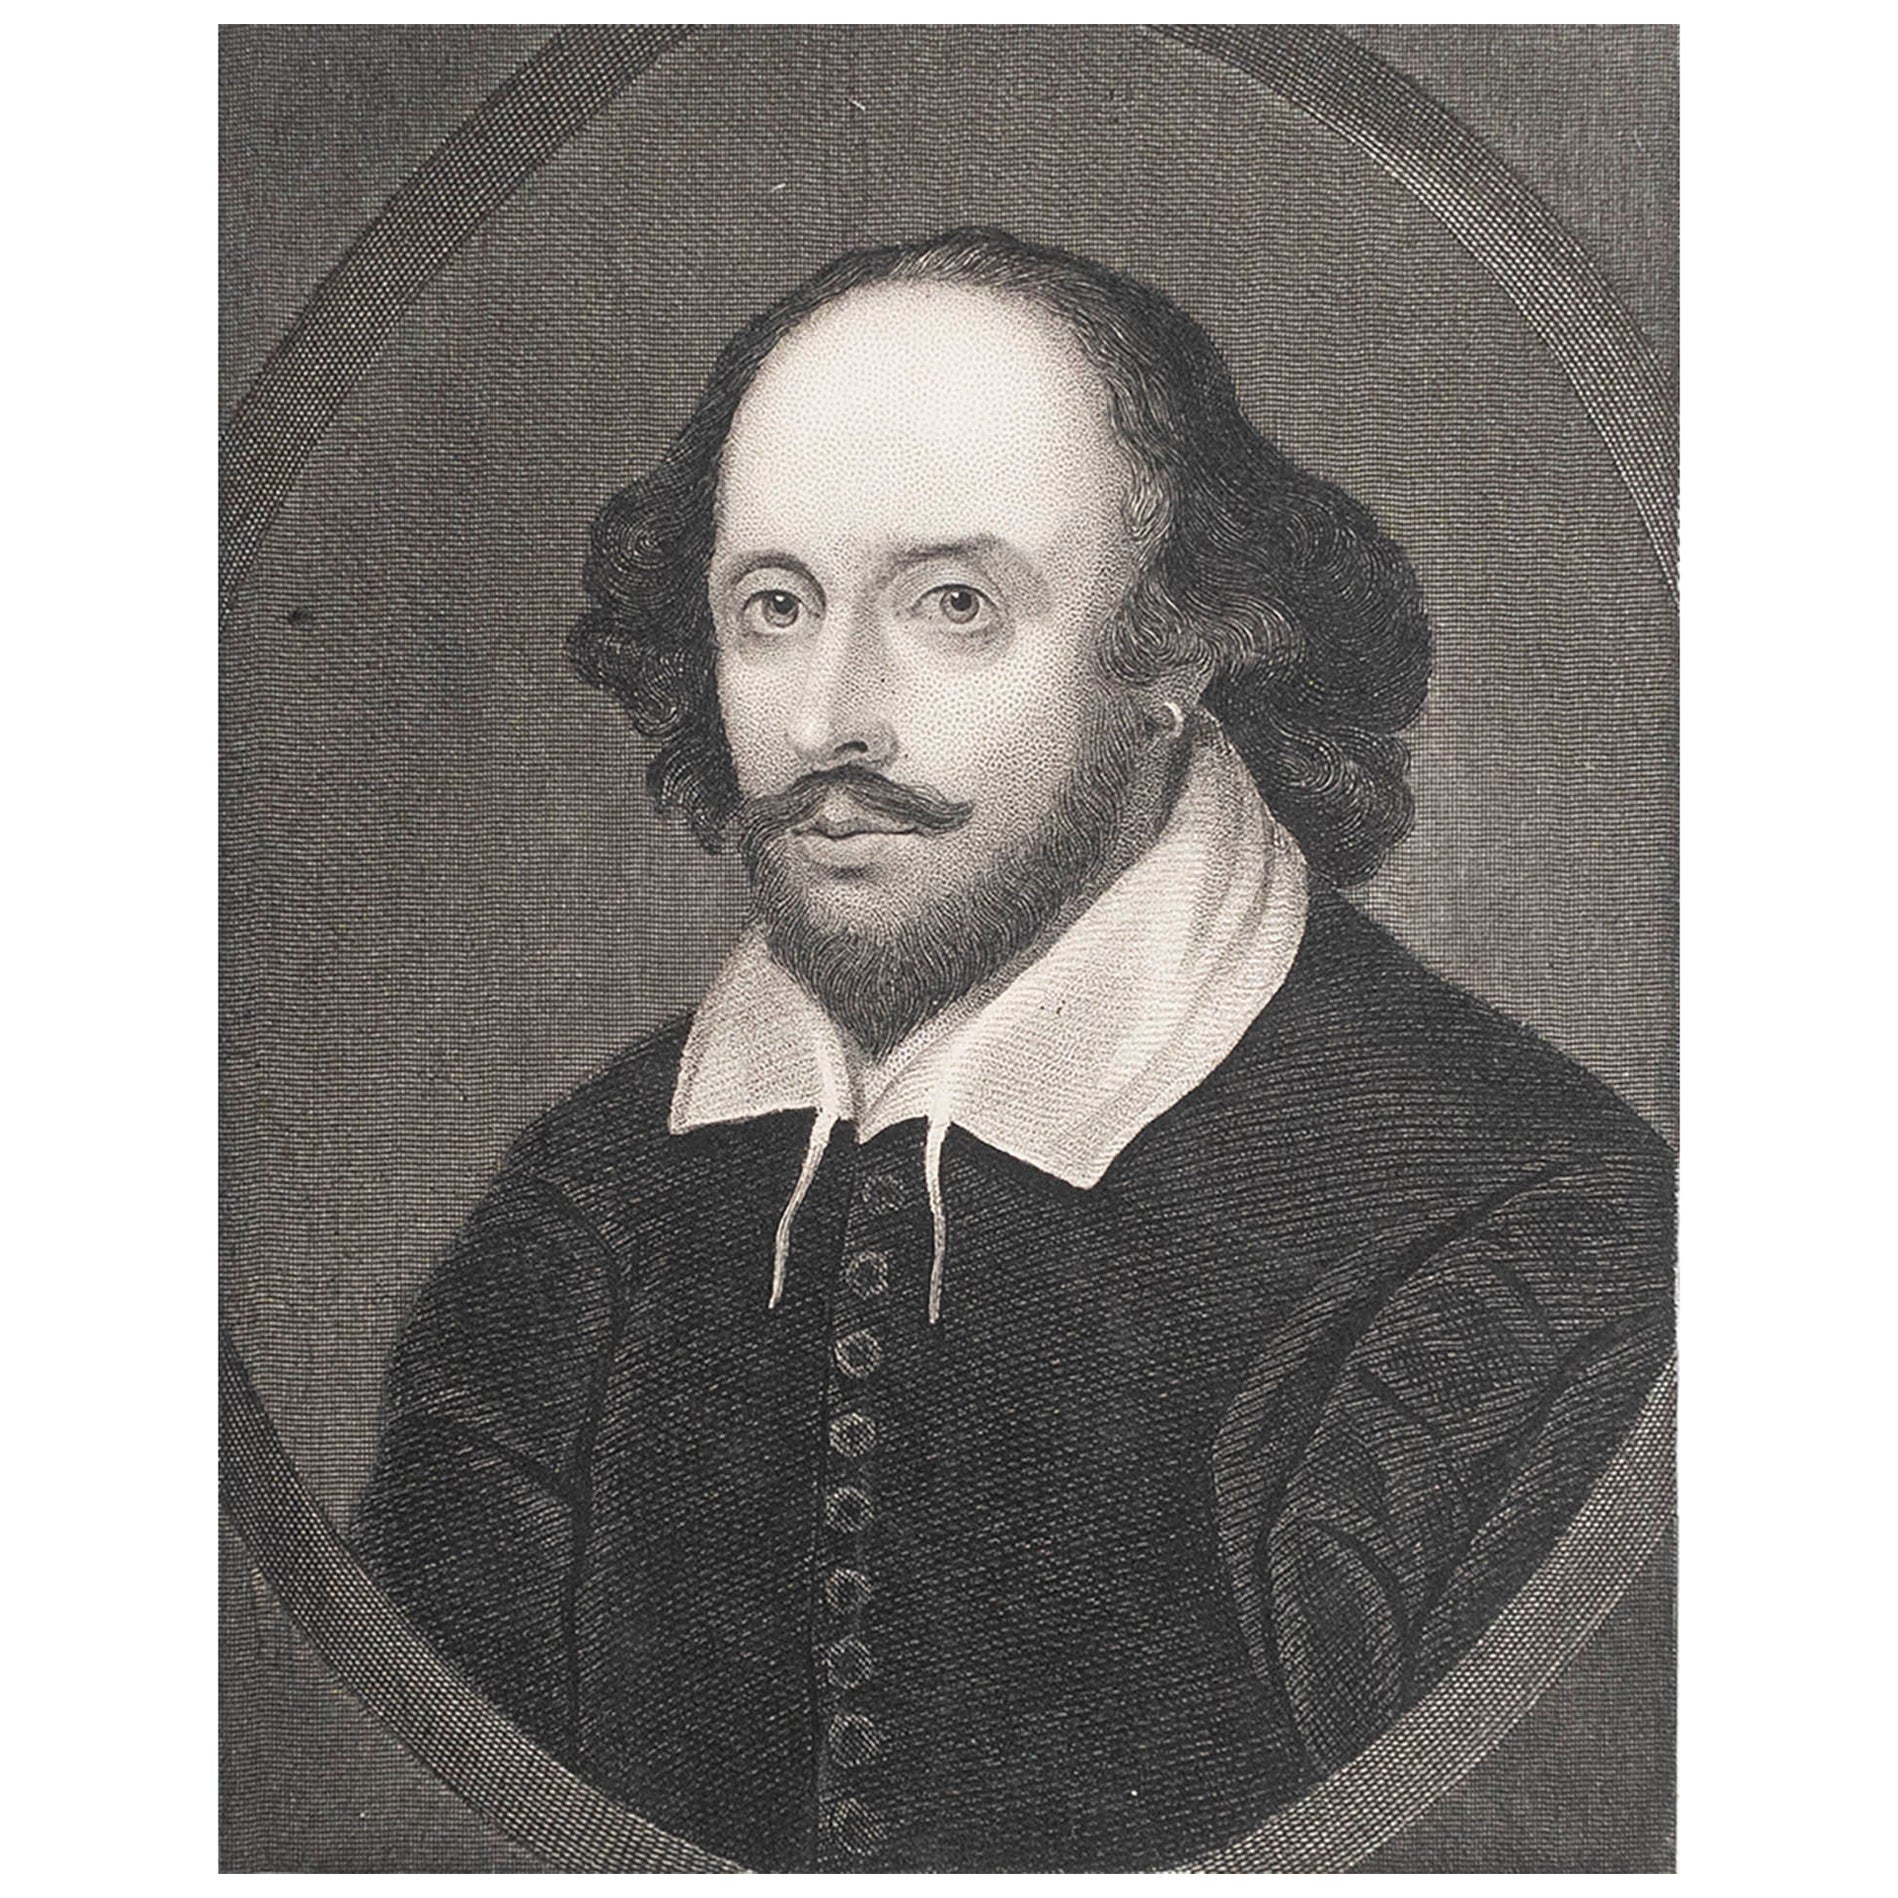 Original Antique Print, Portrait of William Shakespeare, circa 1850